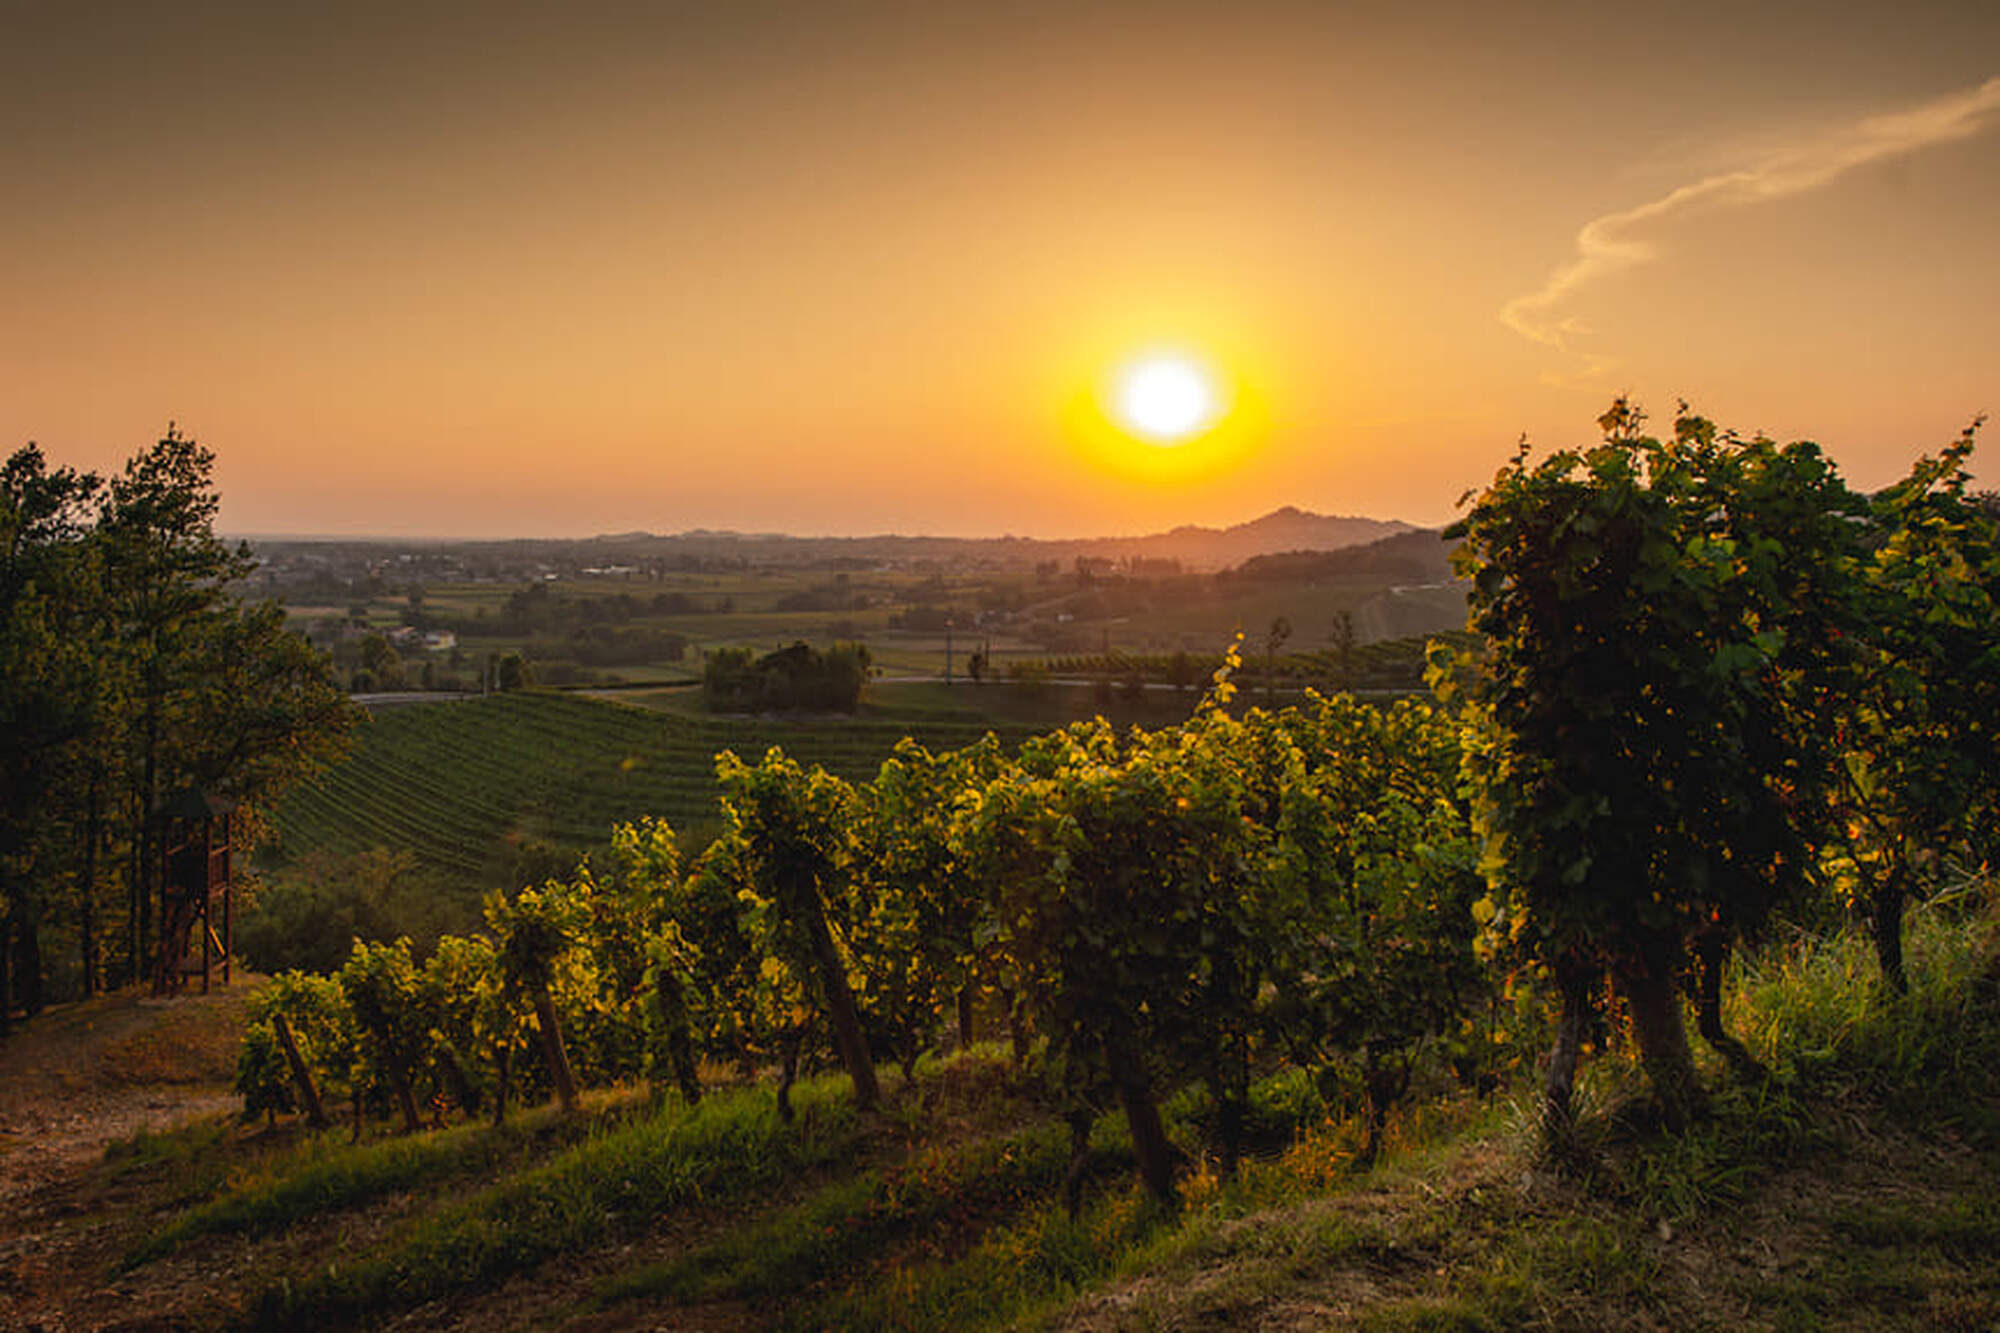 Vineyards at sunset.